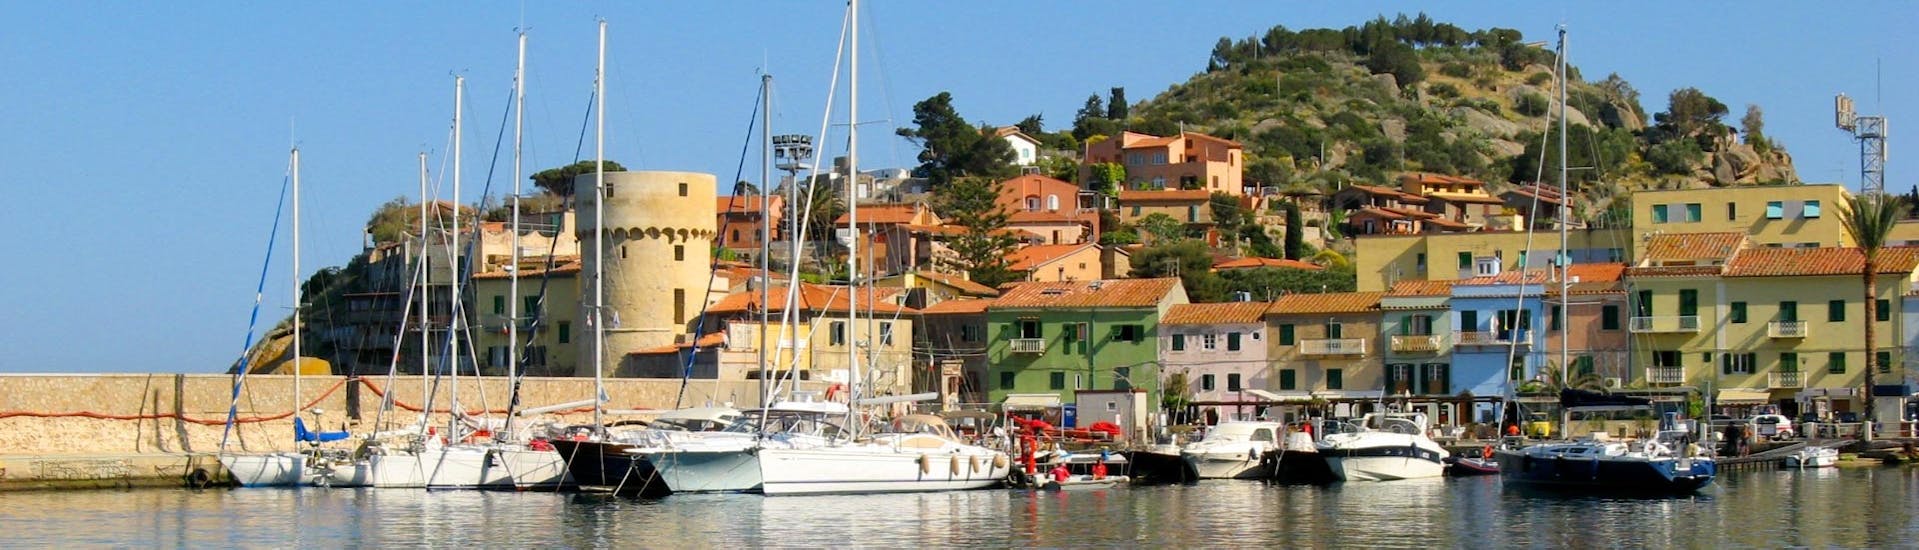 Blick auf die Stadt in der Nähe des Hafens während des Tagesausflugs zur Insel Giglio mit Toscana Mini Crociere.